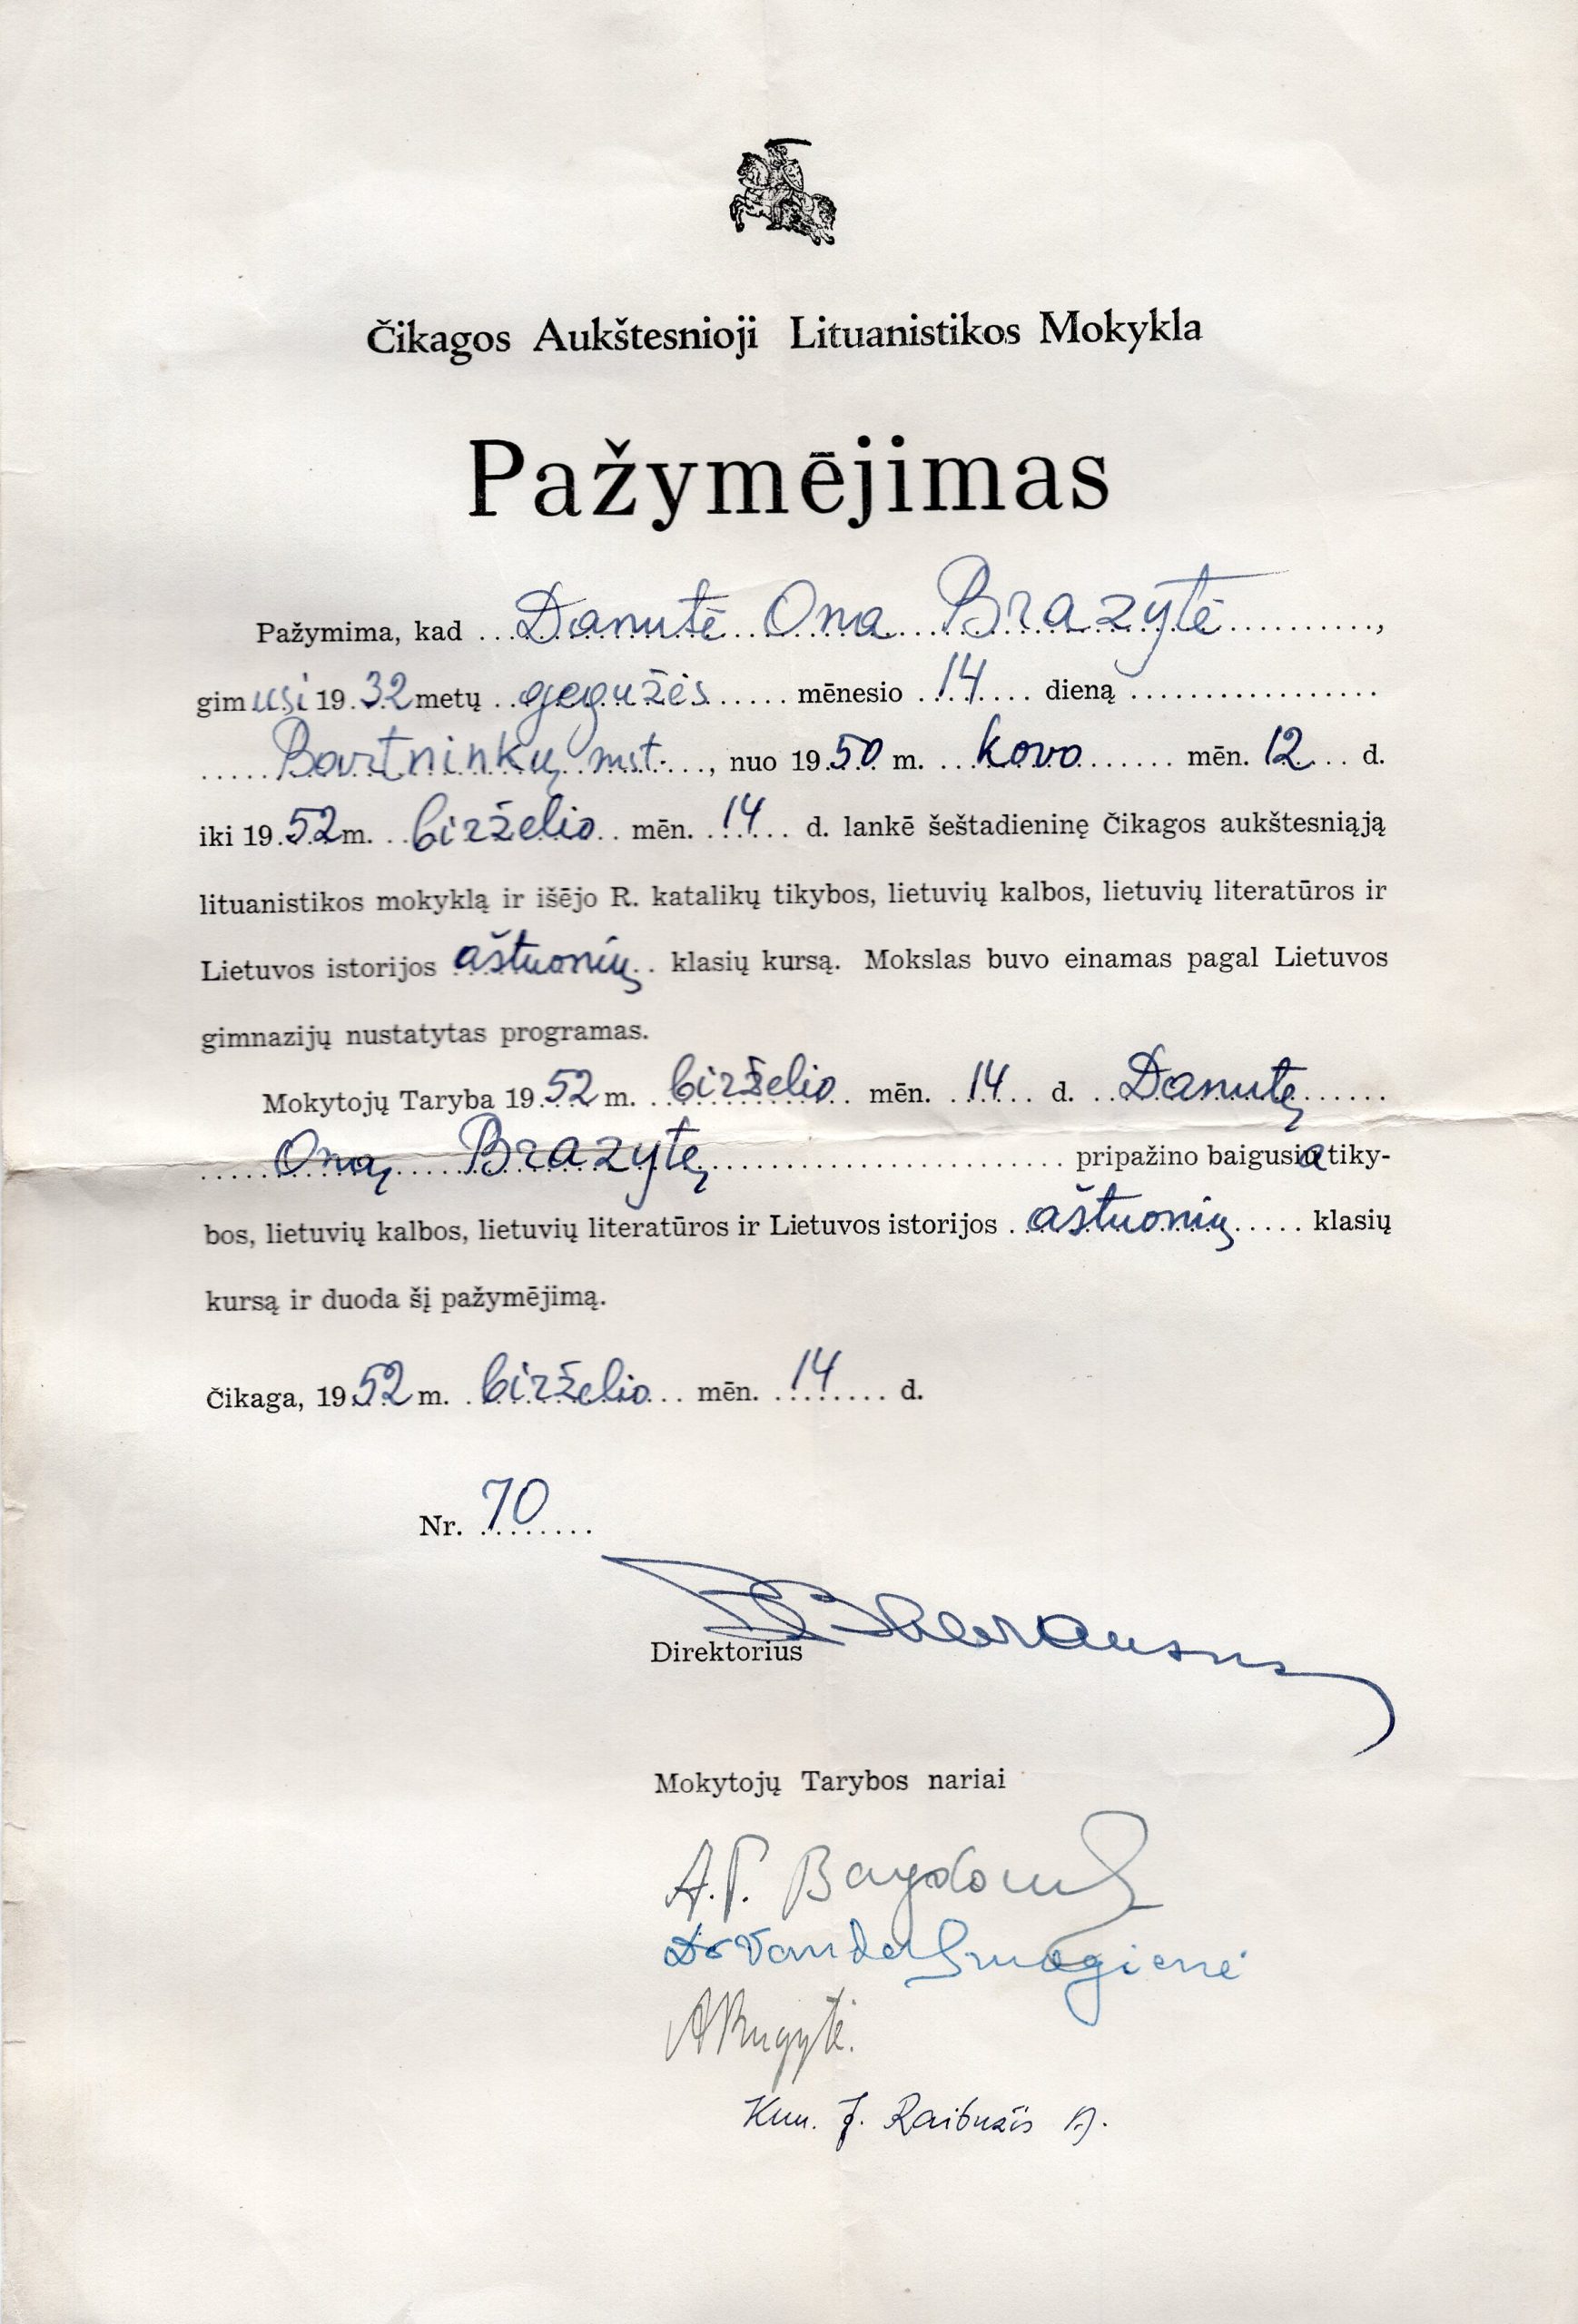 Pažymėjimas Nr. 70, išduotas D. Brazytei, baigusiai Čikagos aukštesniosios lituanistikos mokyklos aštuonių klasių kursą. Čikaga, 1952 m. birželio 14 d. MLLM_138970